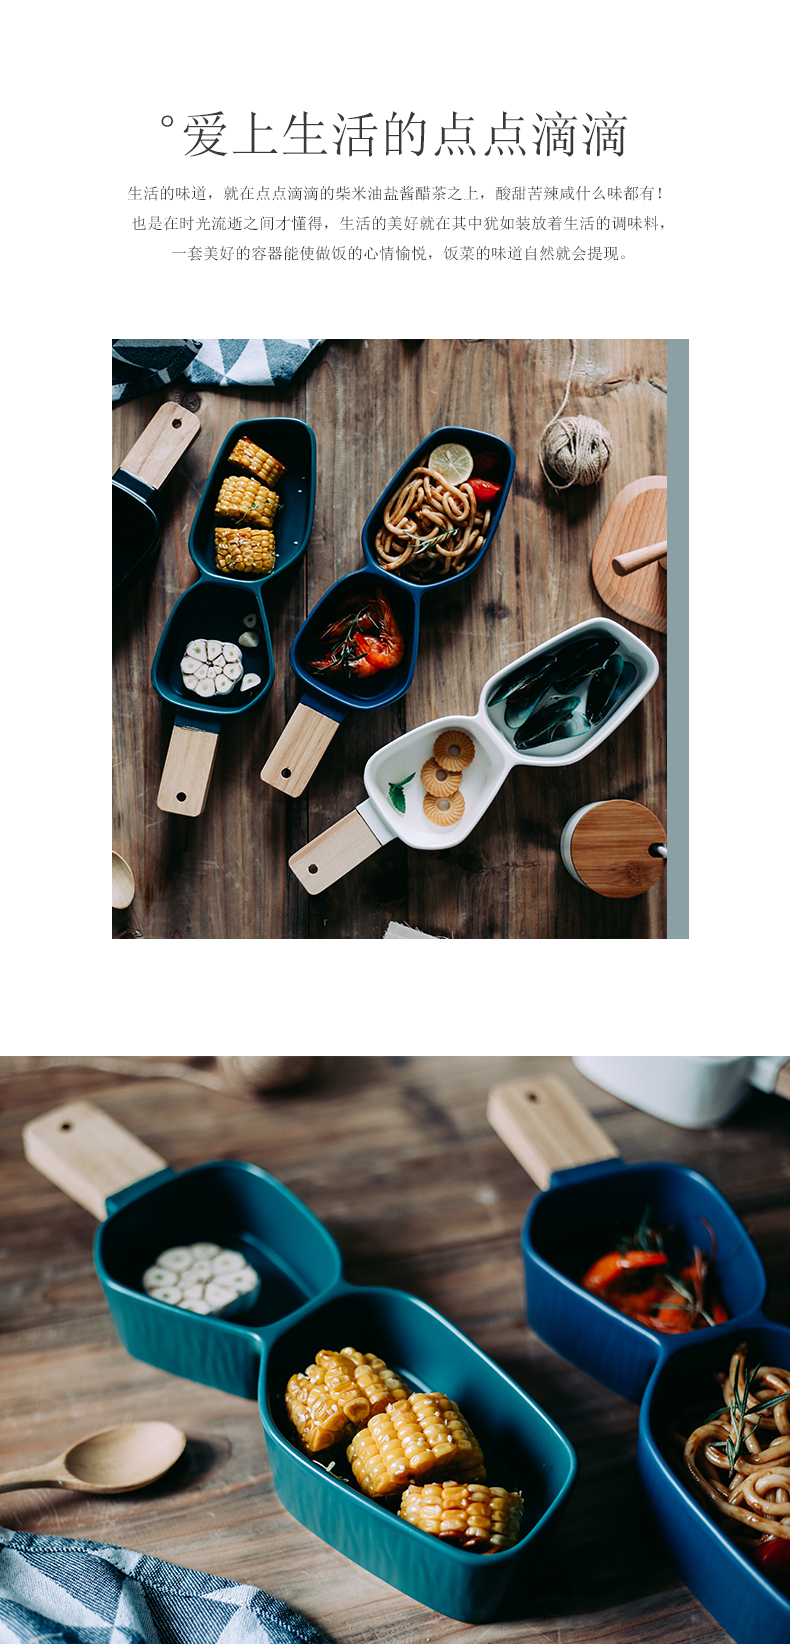 Creative Japanese ceramic bowl matte enrolled irregular second household utensils fruit salad bowl, bowl dessert bowl bowl for breakfast